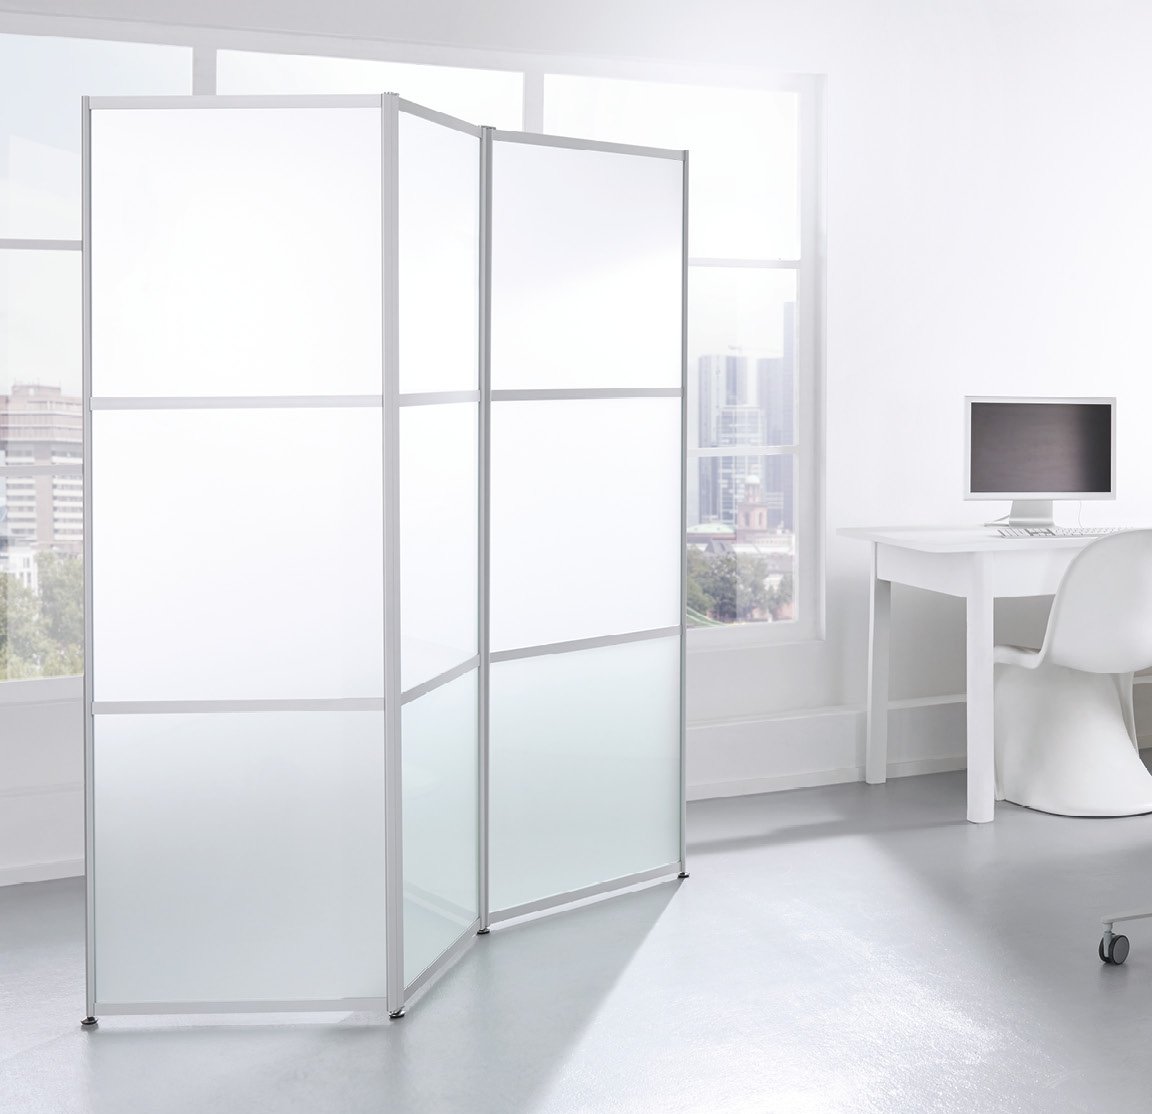 Faltarm-Raumteiler mit 3 frei drehbaren Faltarmen aus satiniertem Glas